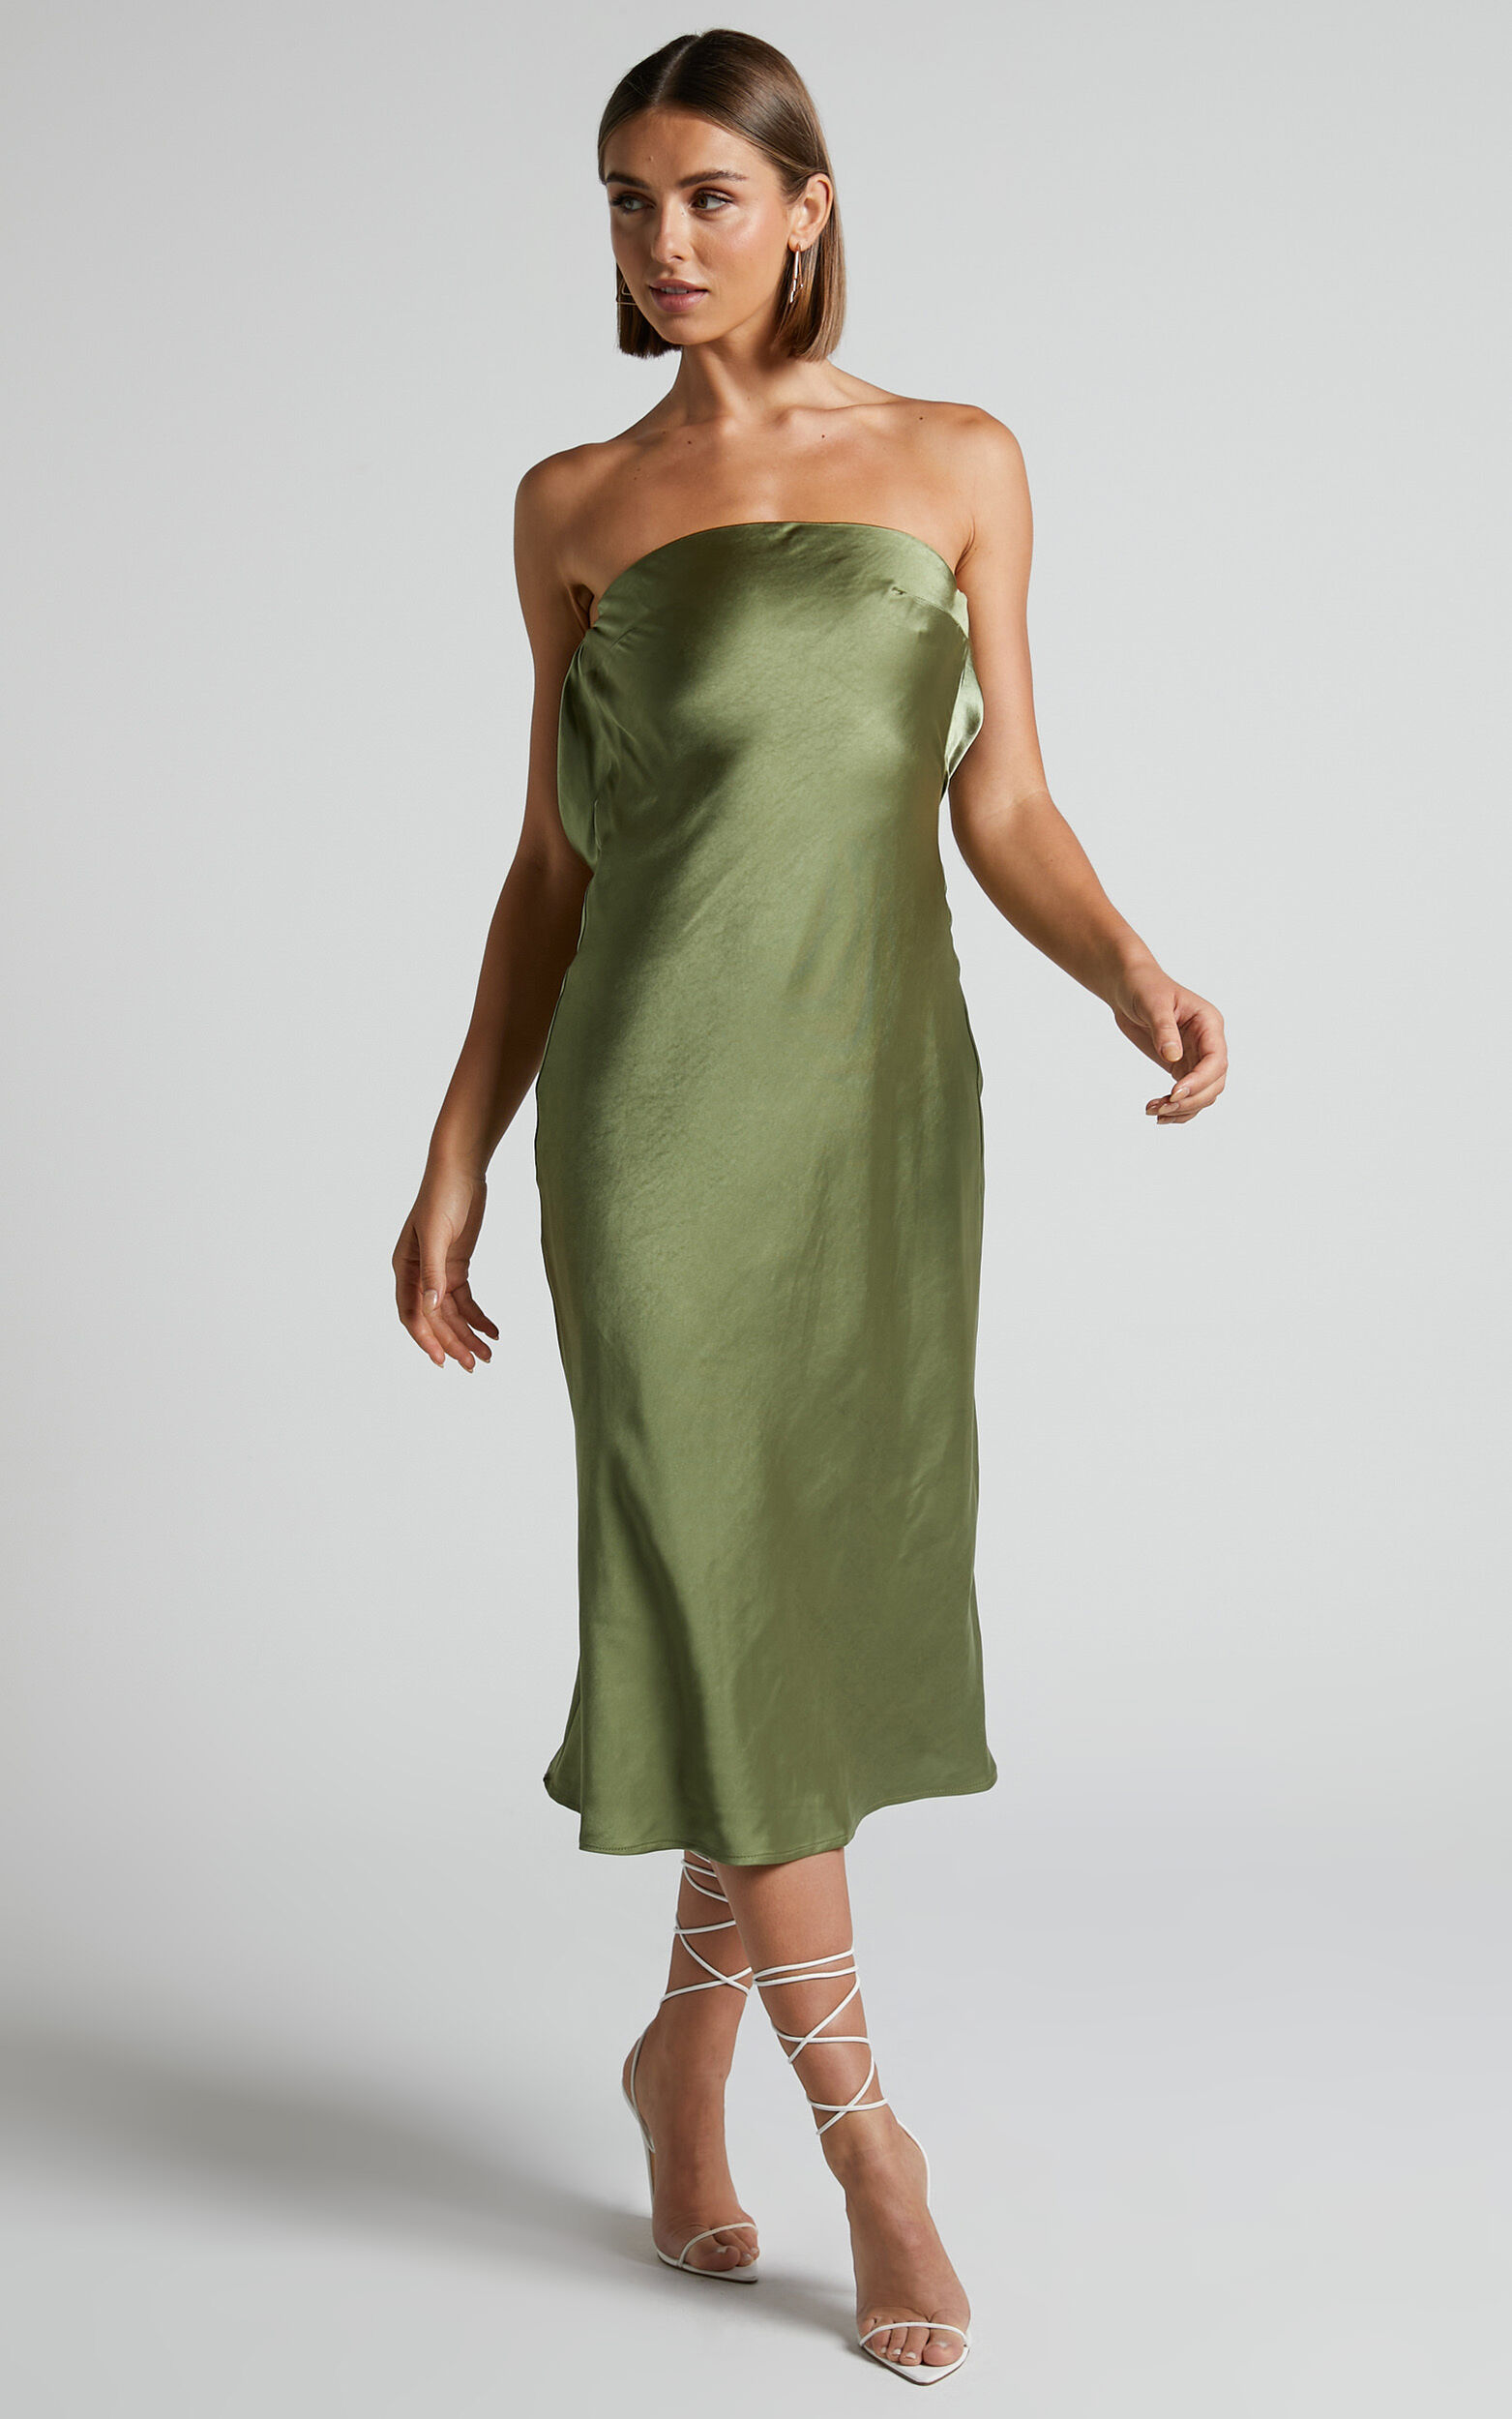 Charlita Midi Dress - Strapless Cowl Back Dress in Olive | Showpo USA